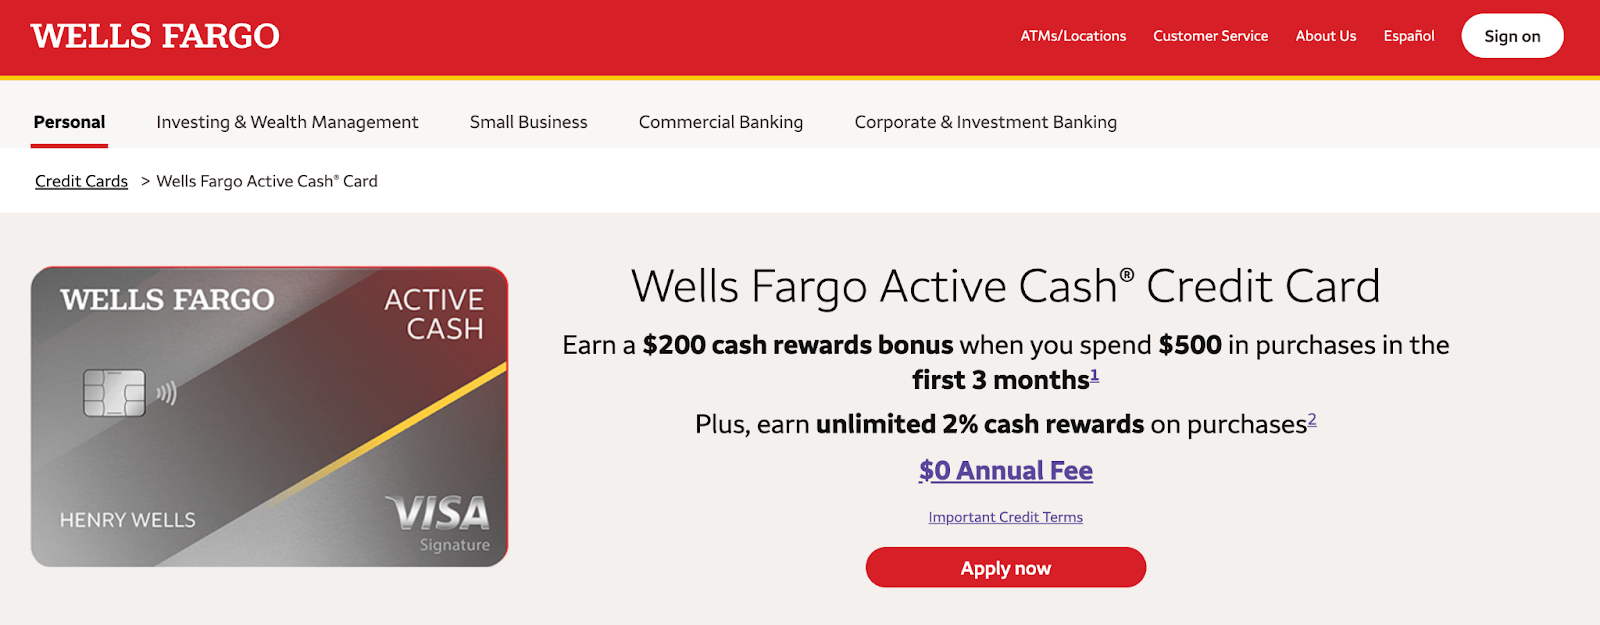 Wells Fargo Active Cash® Credit Card